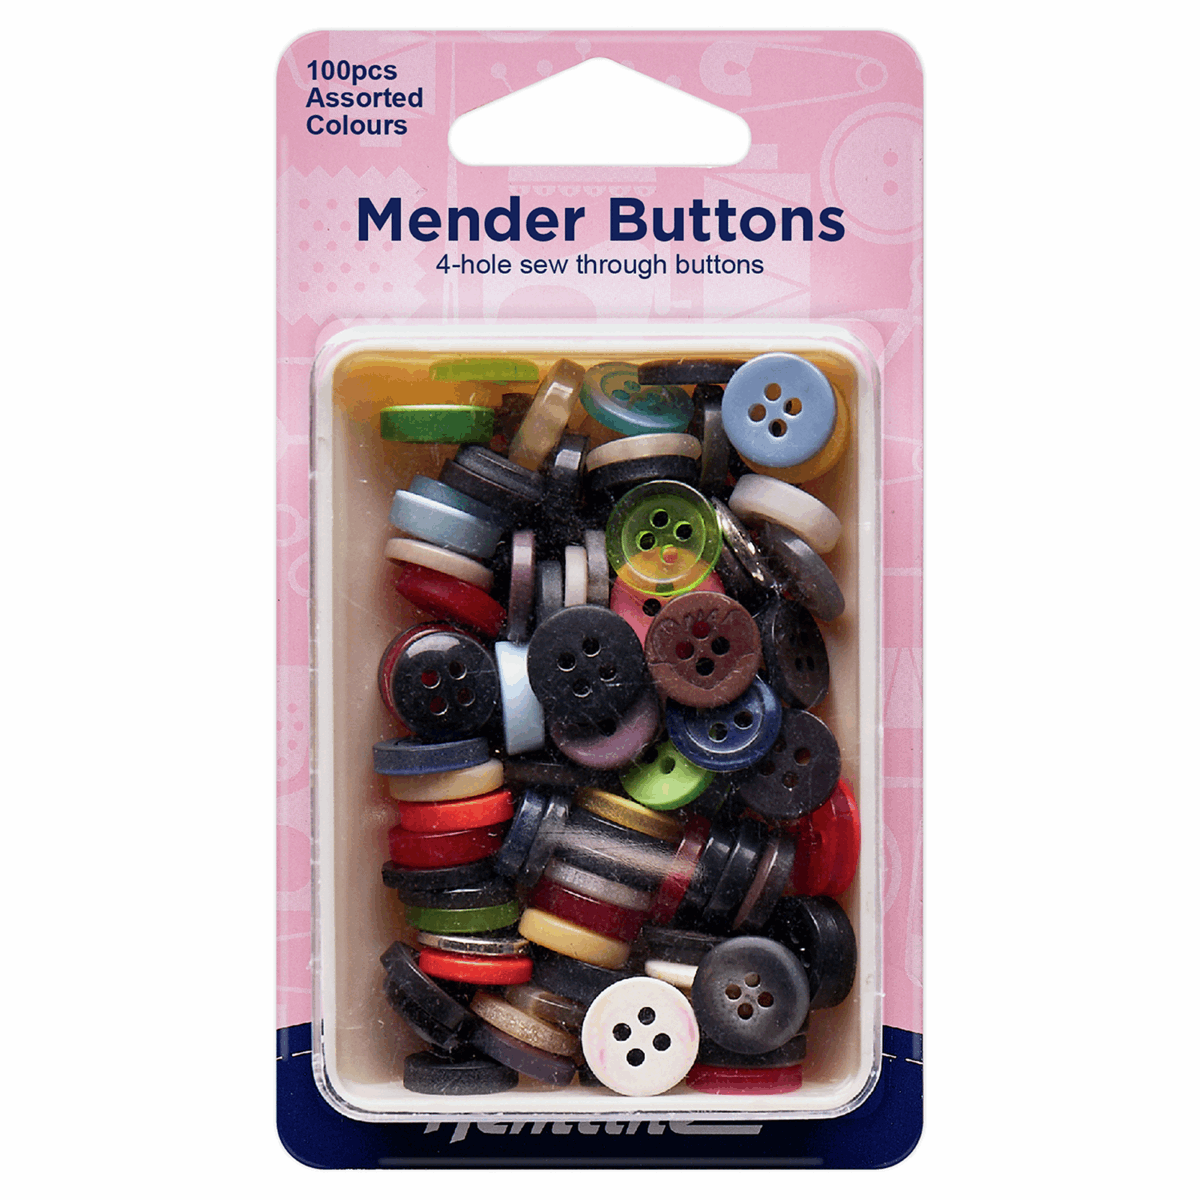 Hemline Assorted Mender Buttons - 100pc